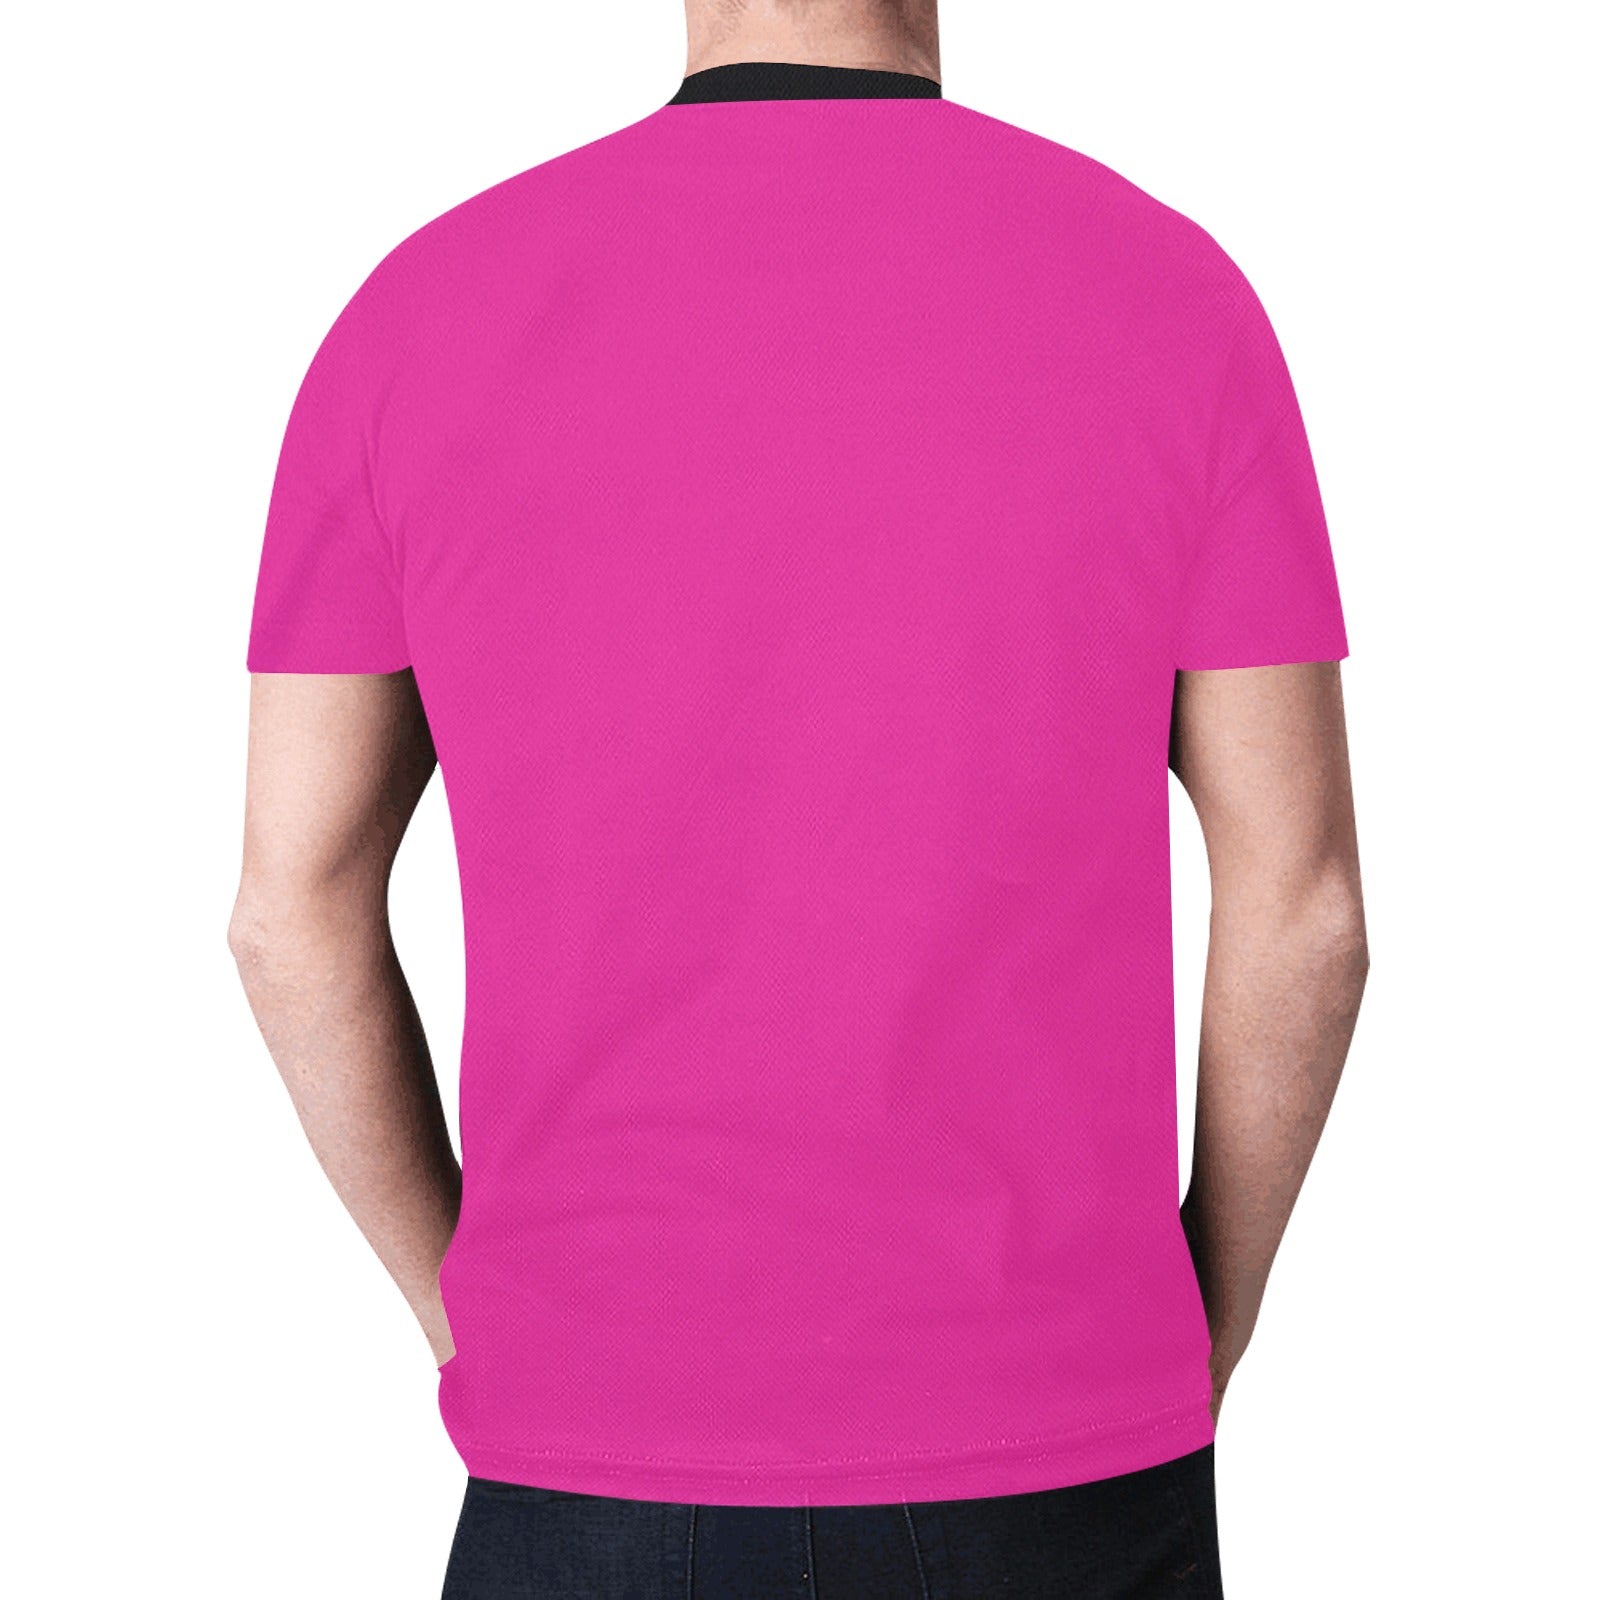 Bull Spirit Guide (Pink) T-shirt for Men